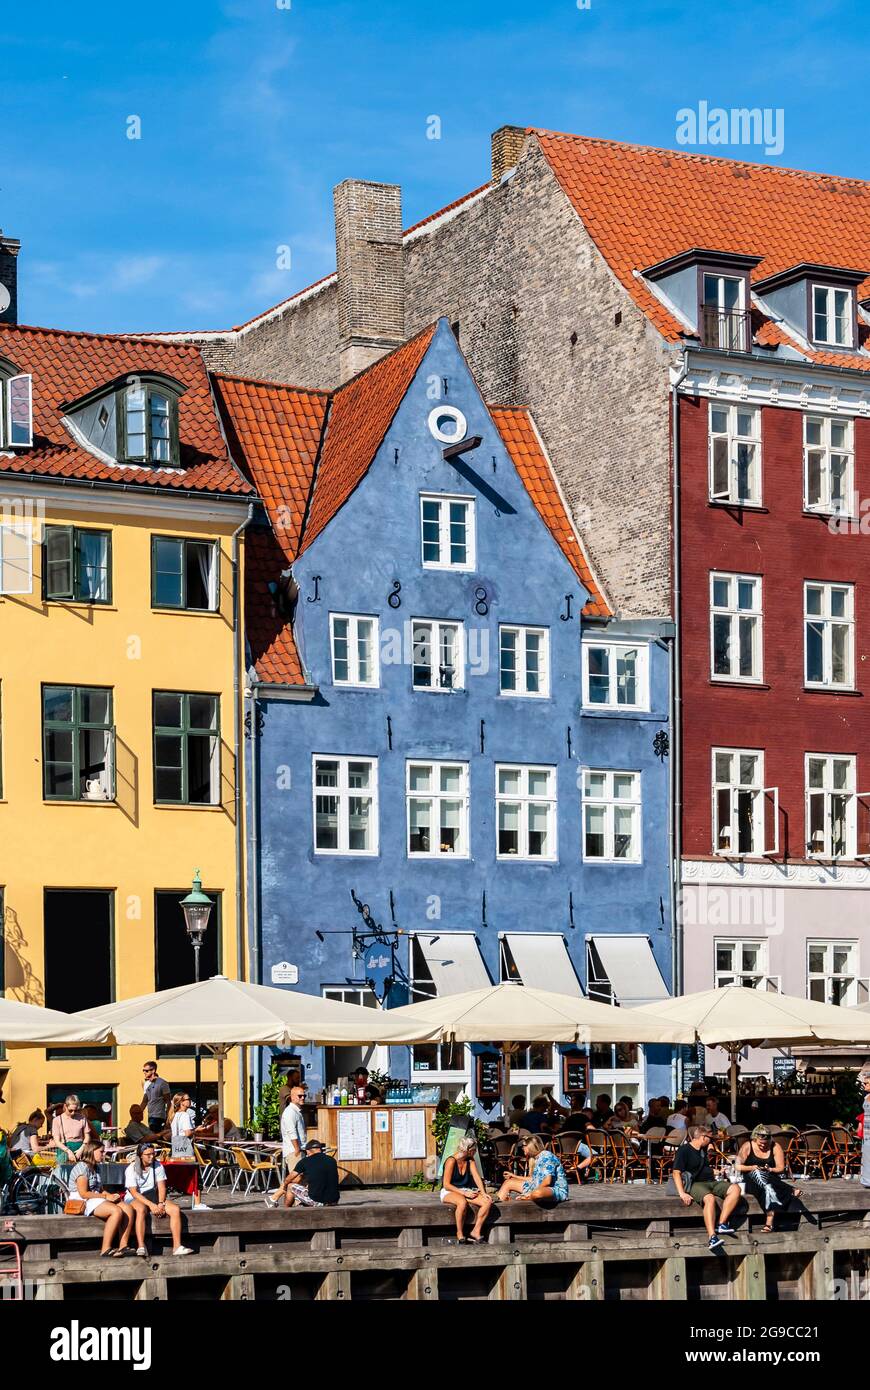 Dettaglio del molo turistico di Nyhavn con persone che si rilassano, edifici colorati e barche nella città vecchia di Copenhagen, Danimarca Foto Stock